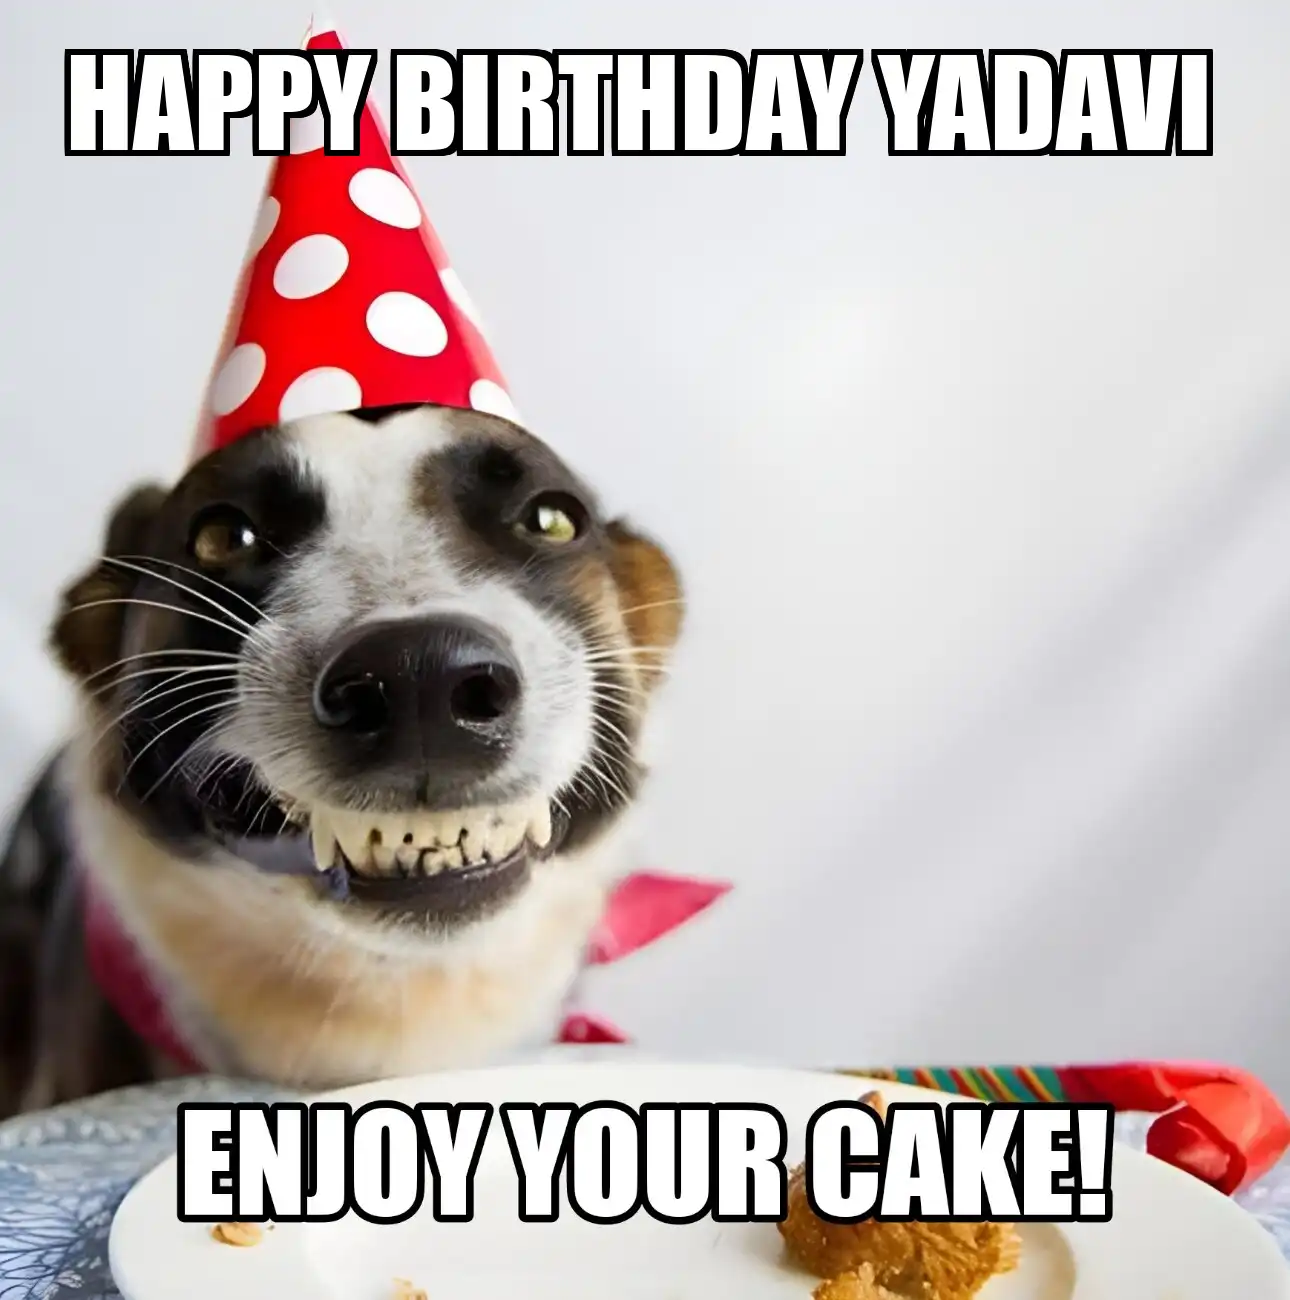 Happy Birthday Yadavi Enjoy Your Cake Dog Meme